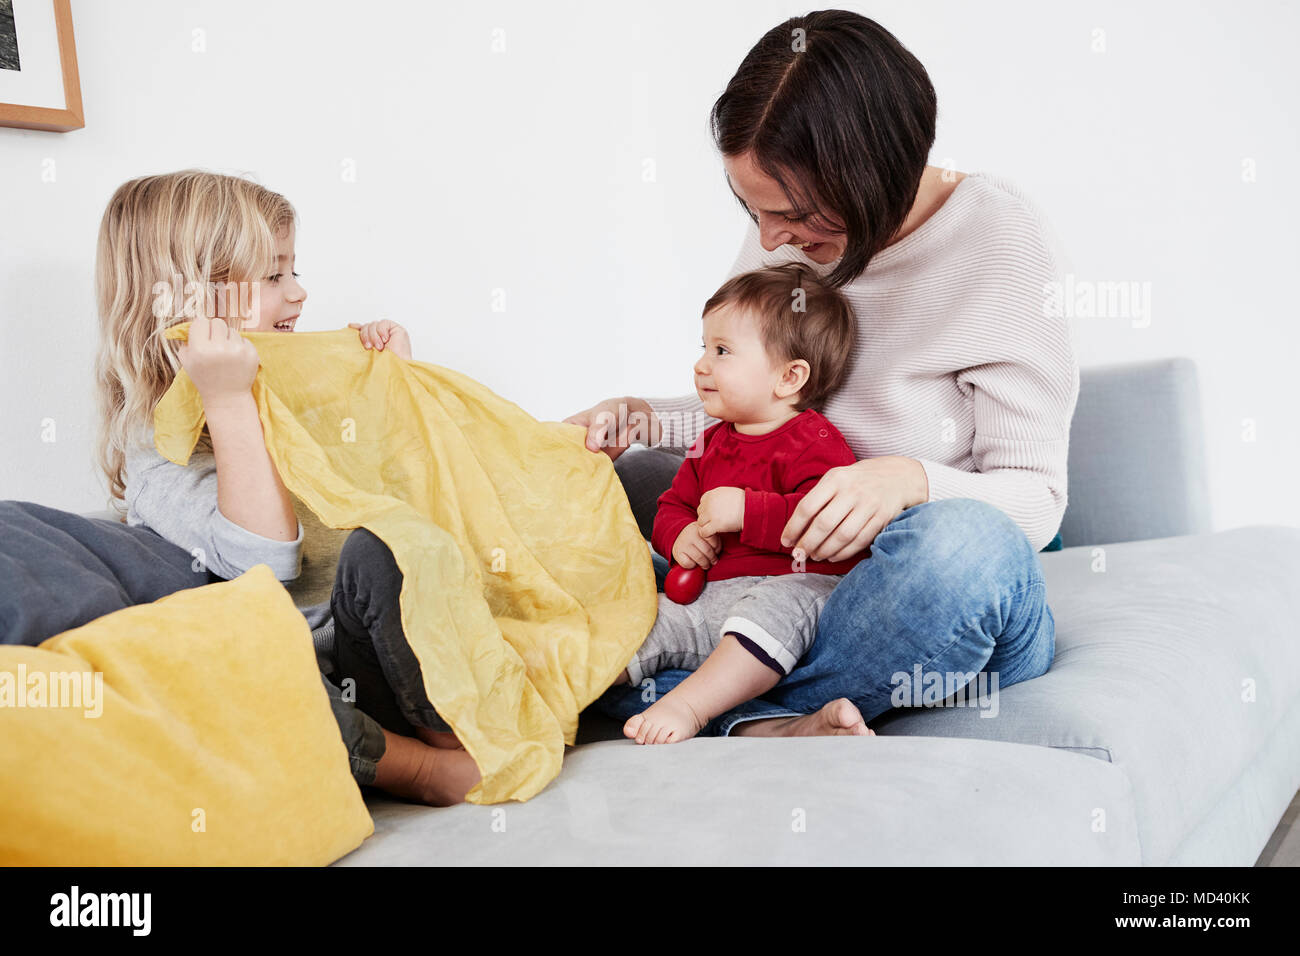 Familia sentados en el sofá, niña jugando peek-a-boo con la hermana de bebé Foto de stock